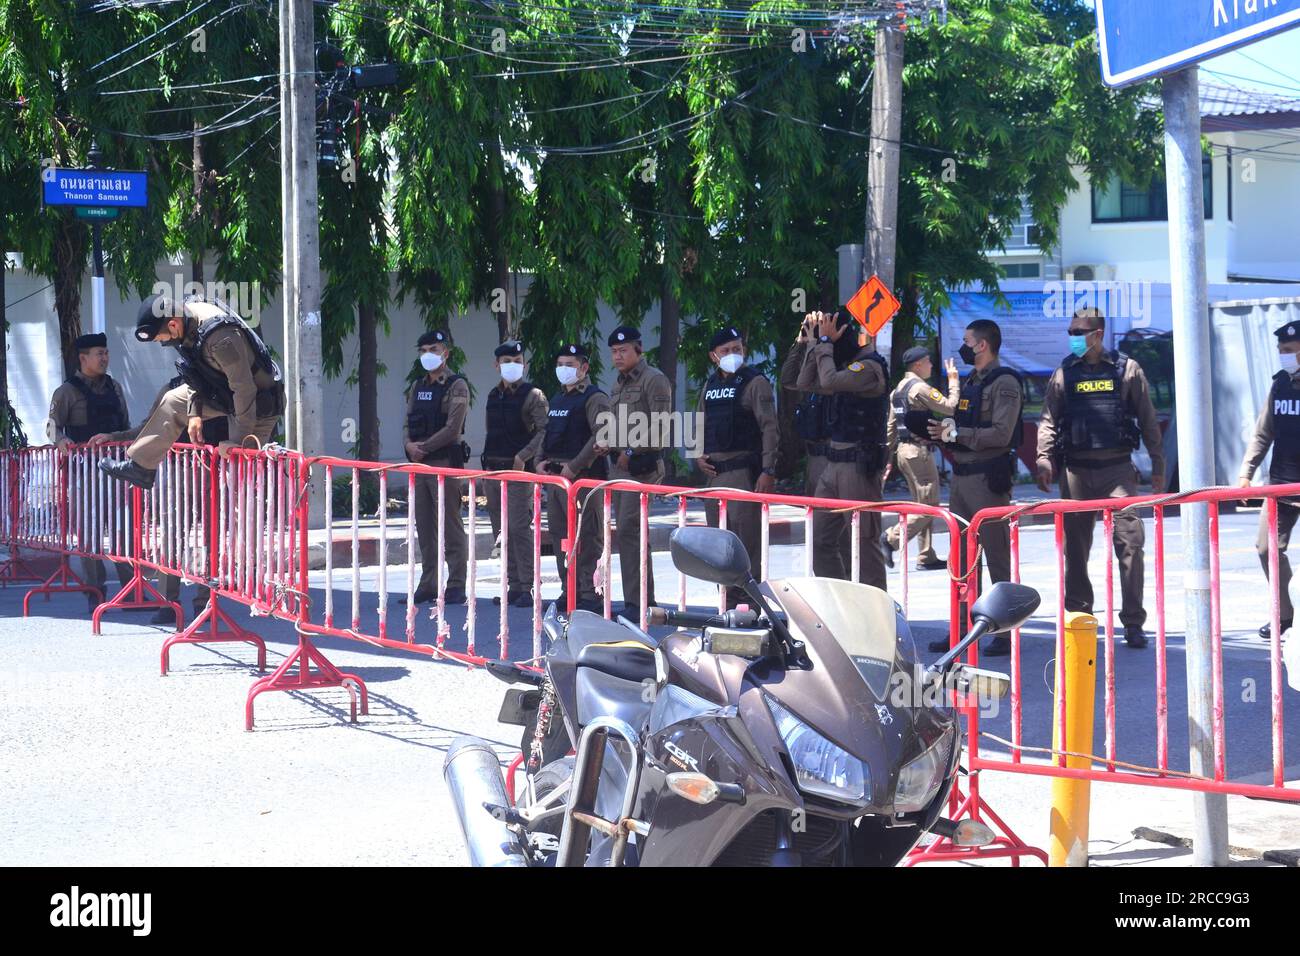 Das Parlamentsgebäude in Bangkok, Thailand, wird Stunden vor einem Protest von Polizeibeamten geschützt. Später wird ein Protest demokratiefreundlicher Anhänger in der Nähe des Parlamentsgebäudes stattfinden, Thailands Parlament stimmt am 13. Juli ab, um zu entscheiden, ob die Vorsitzende der Partei "Move Forward", Pita Limjaroenrat, die bei den Wahlen im Mai die meisten Sitze gewonnen hat, die neue Premierministerin werden kann. Später verlor Pita Limjaroenrat die Wahl, Premierminister zu werden, 51 Stimmen weniger als 376 Stimmen. Bei der Abstimmung gab es viele Enthaltungen von einigen Mitgliedern des Senats, gefüllt mit konservativen Mitgliedern der Militärregierung. Stockfoto